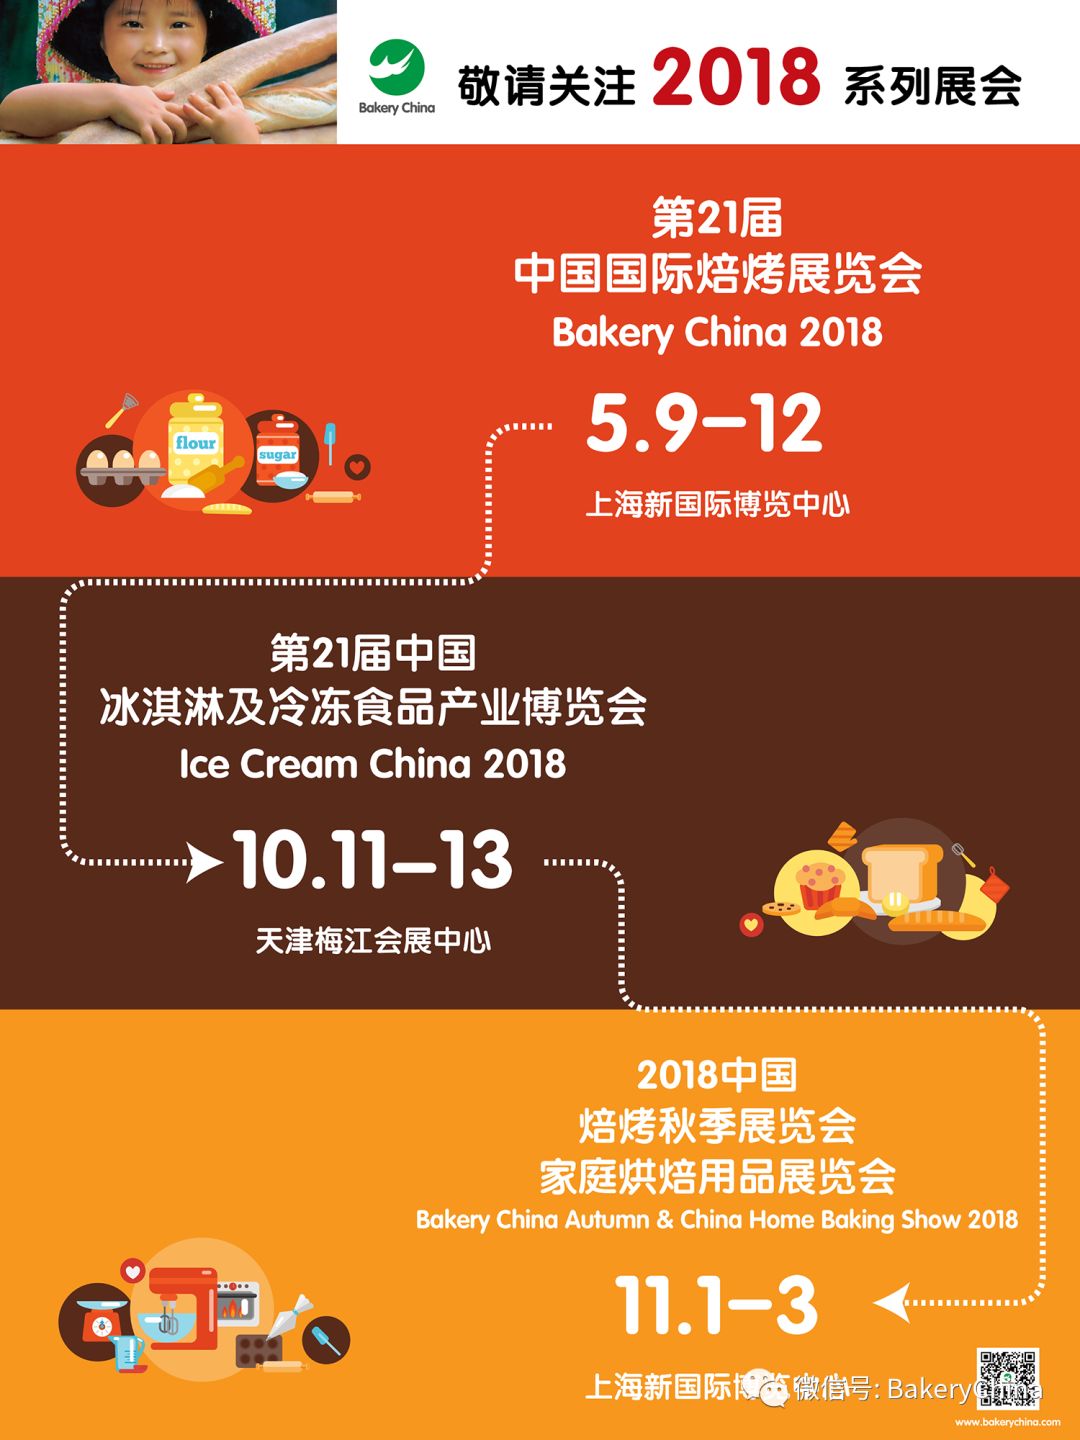 烘焙,焙烤,上海焙烤展,中国国际焙烤展览会BakeryChina,食品展会大全,N4包装馆